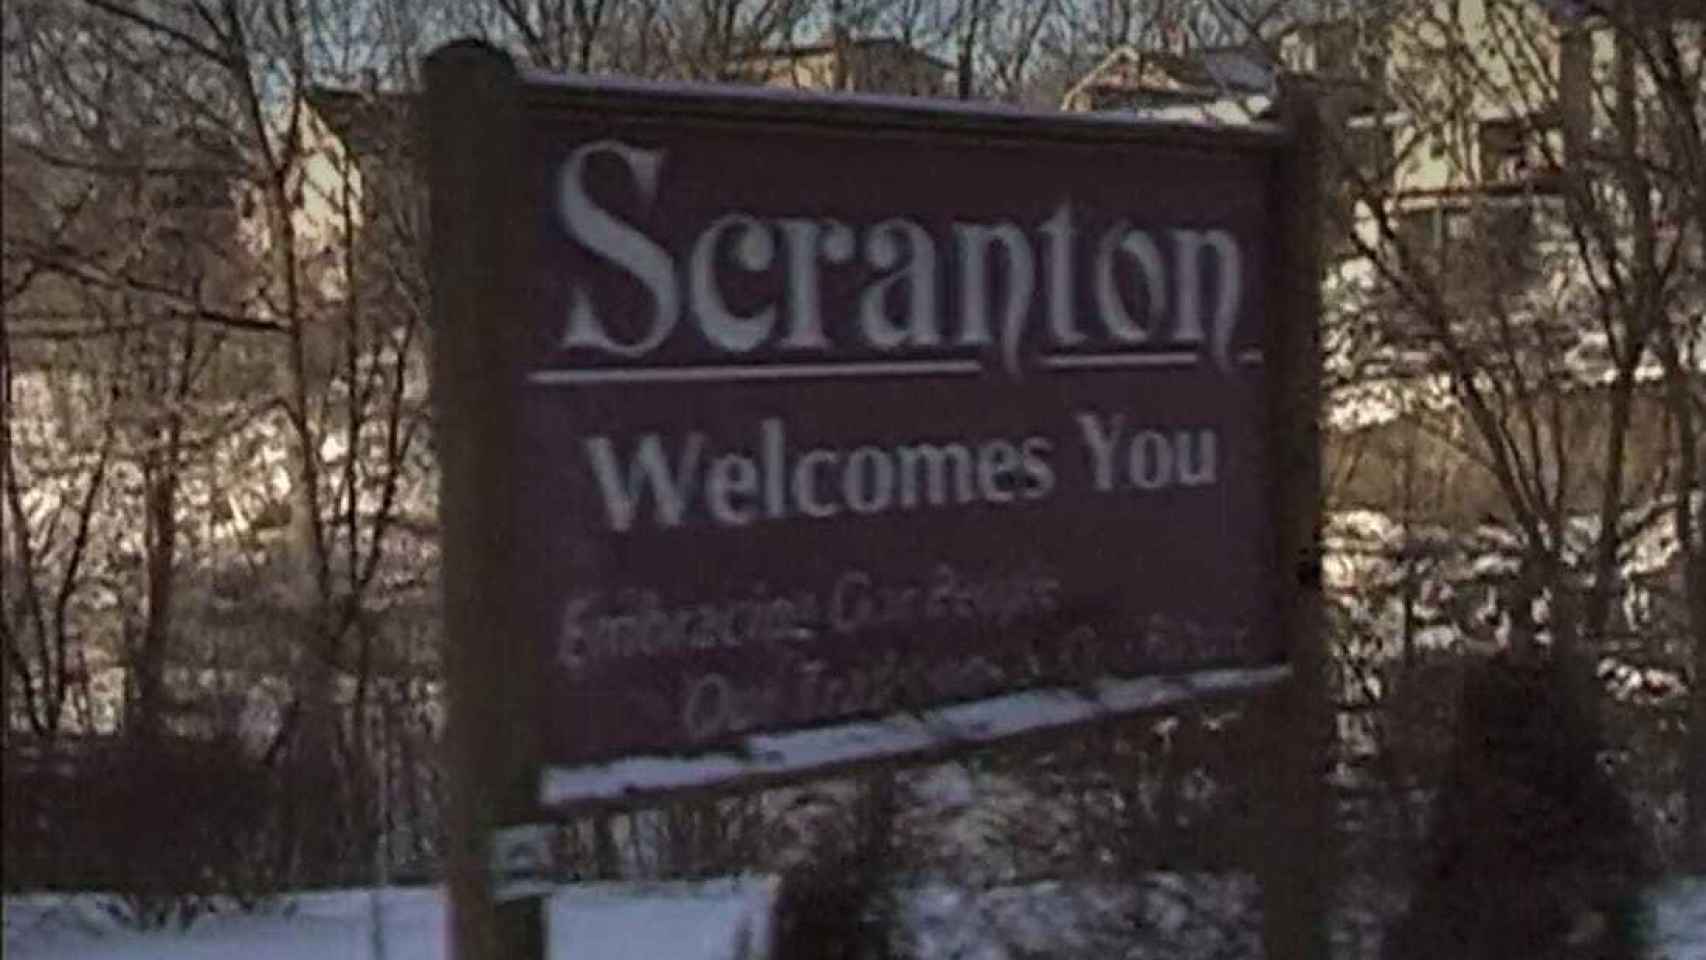 El cartel de Bienvenido a Scranton.